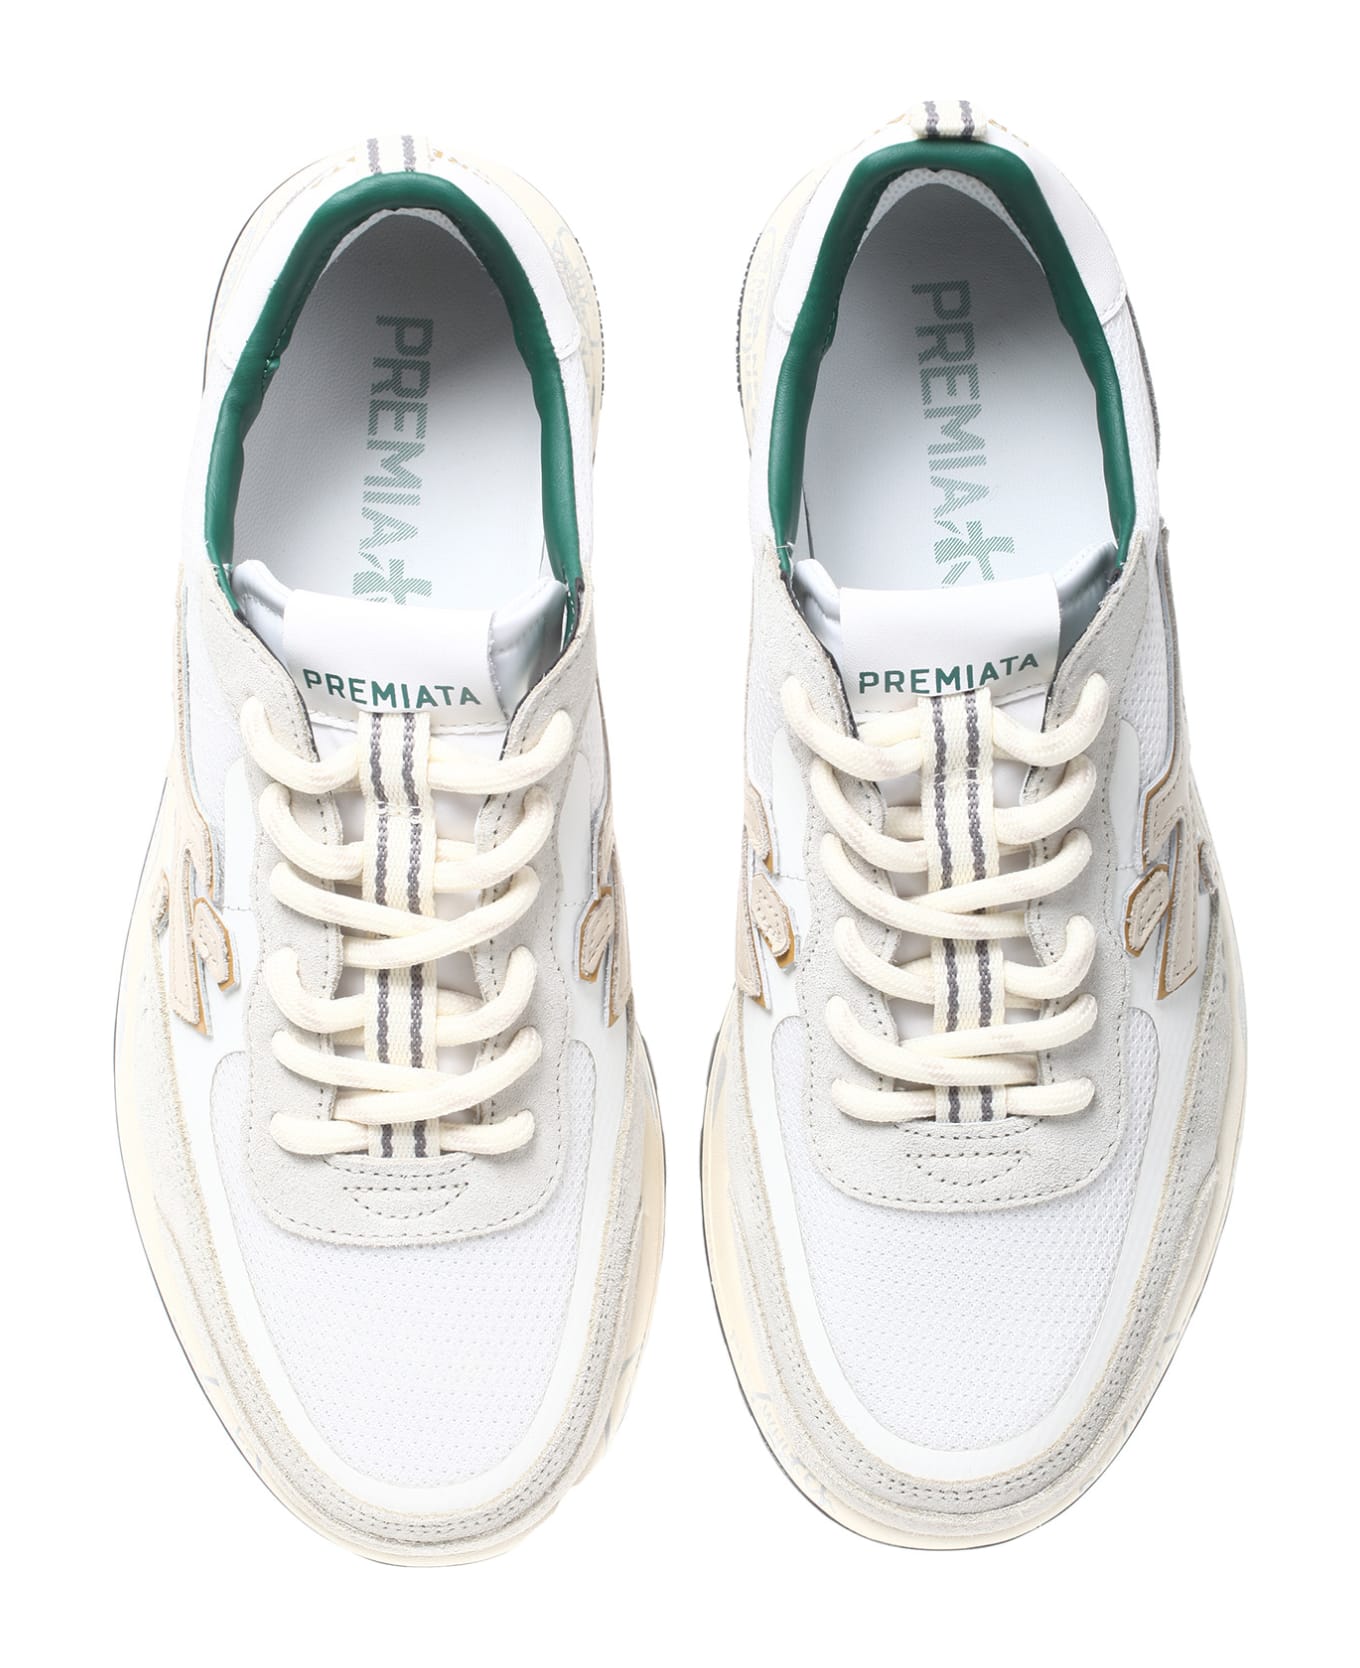 Premiata Flat Shoes White - White